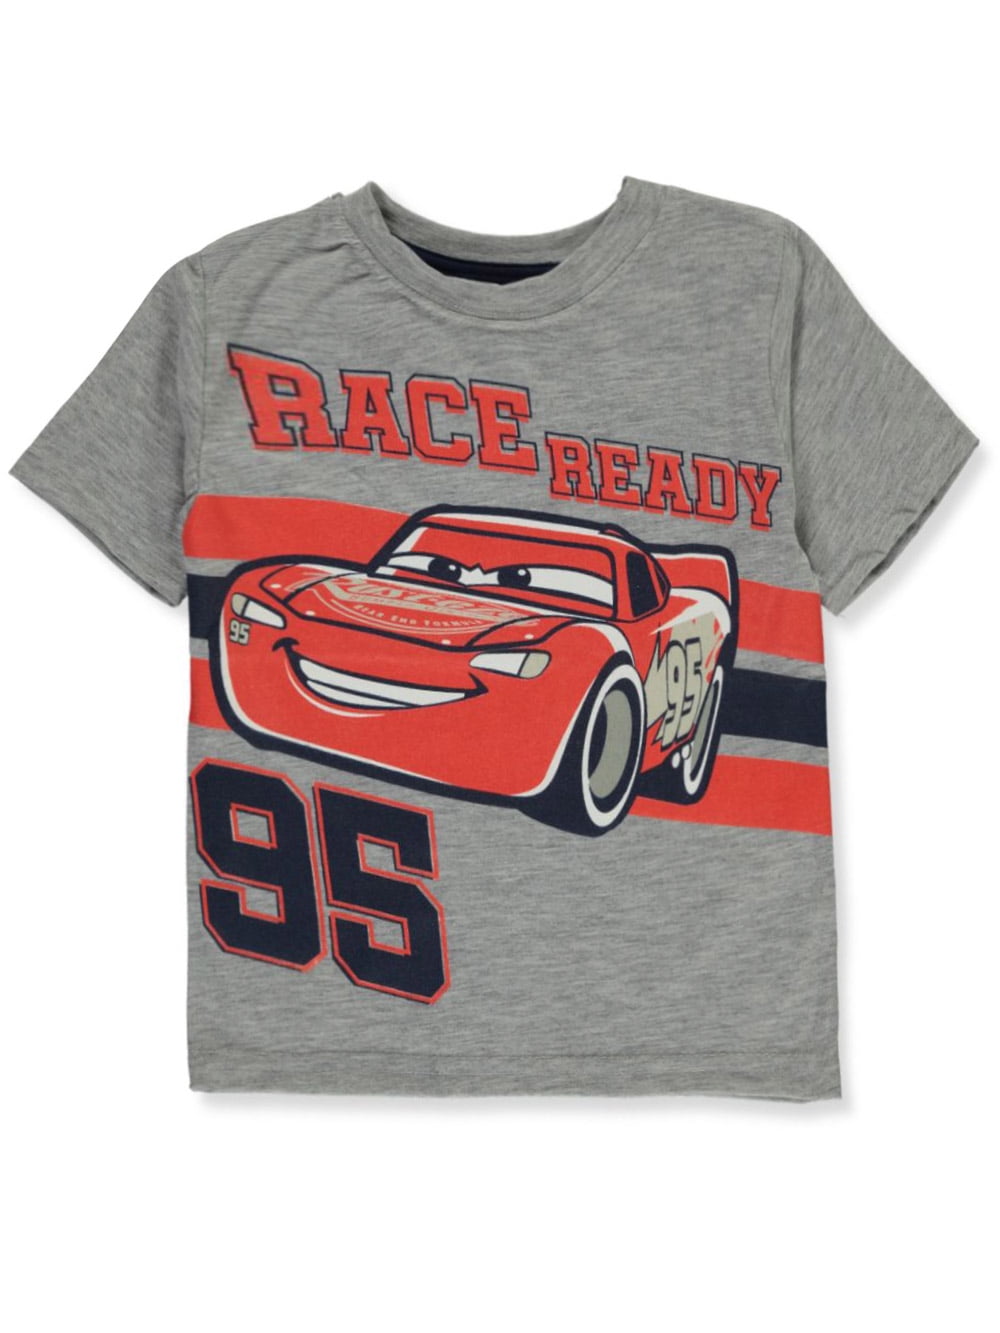 NEU! Disney Cars Lightning MCQUEEN T-Shirt Shirt Pulli Baumwolle braun 80 86 92 